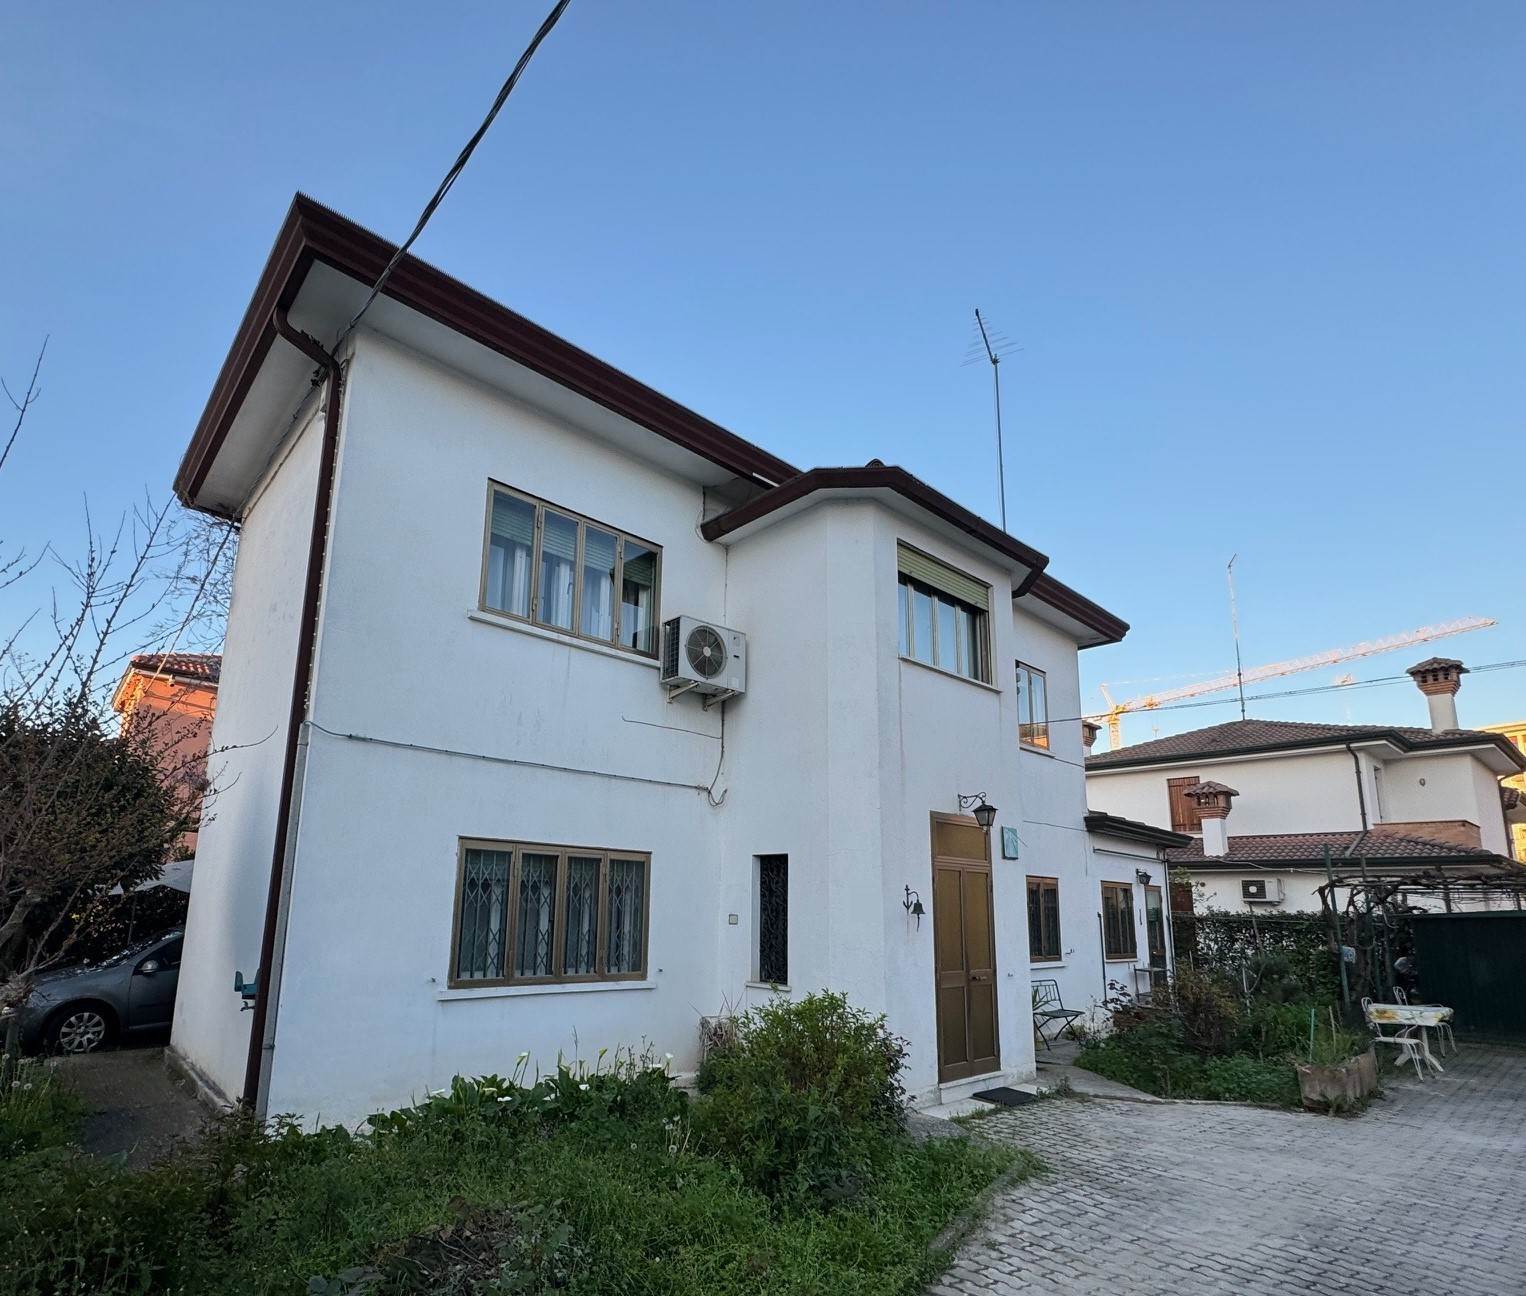 Villa in vendita a Venezia, 8 locali, zona Località: MESTRE CENTRO, prezzo € 255.000 | PortaleAgenzieImmobiliari.it